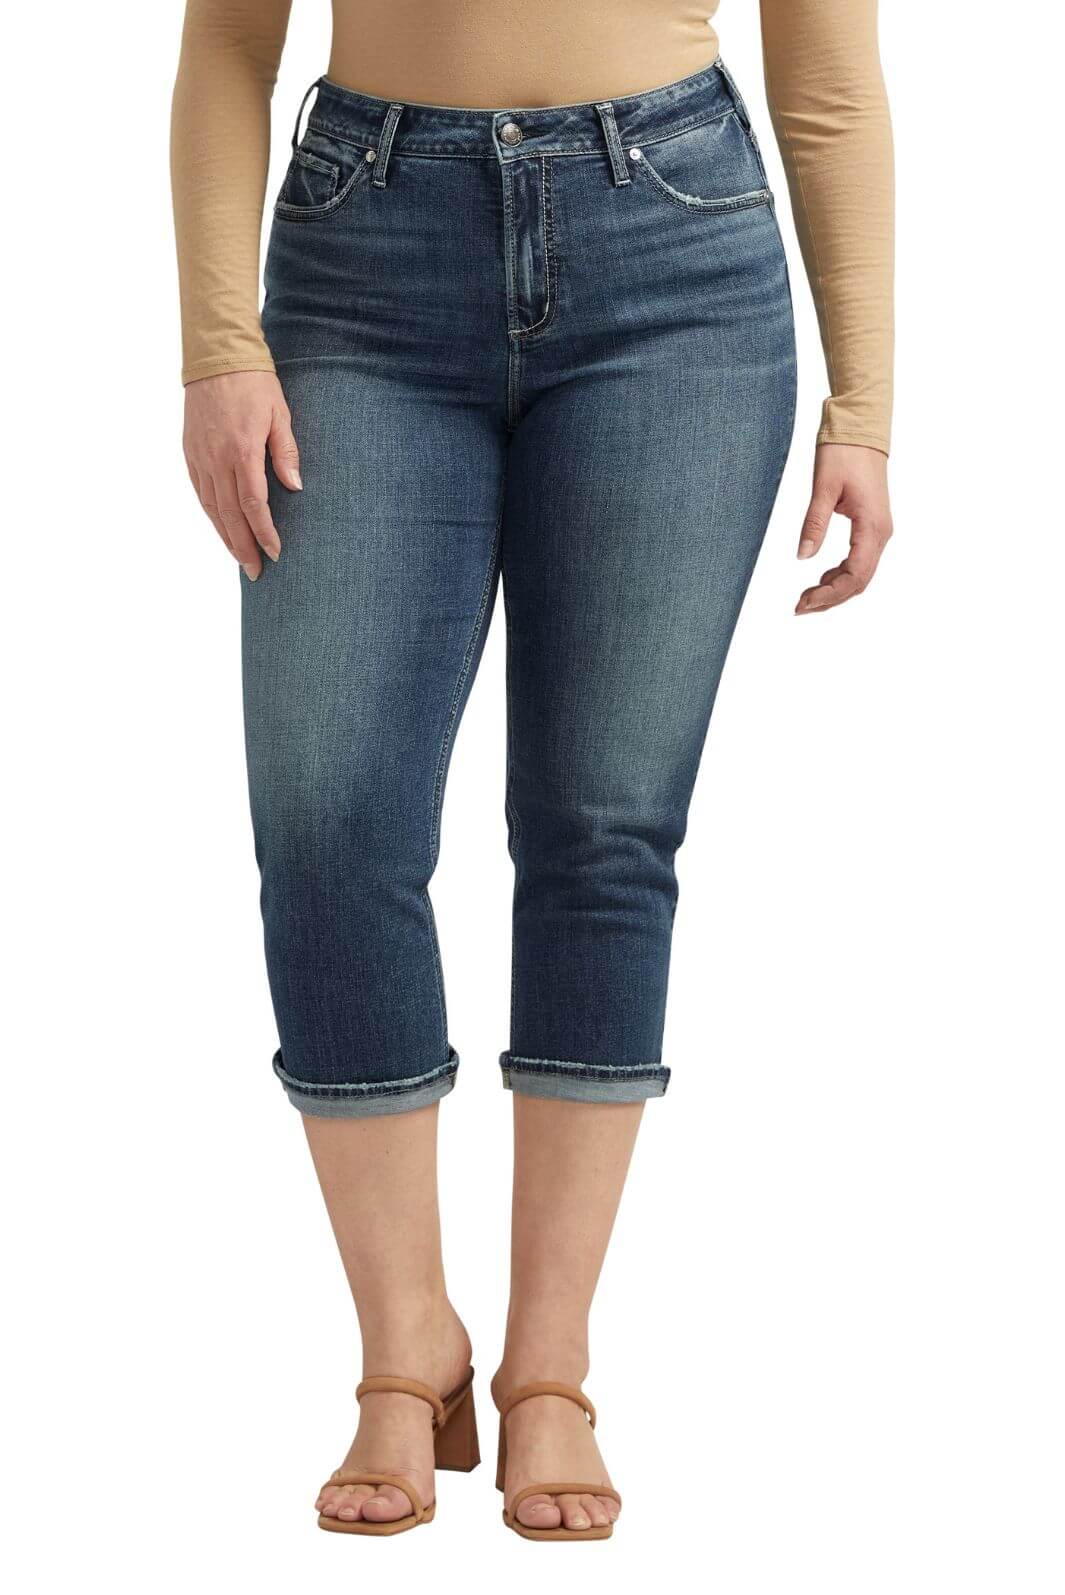 Silver Jeans Plus Size Avery Capri